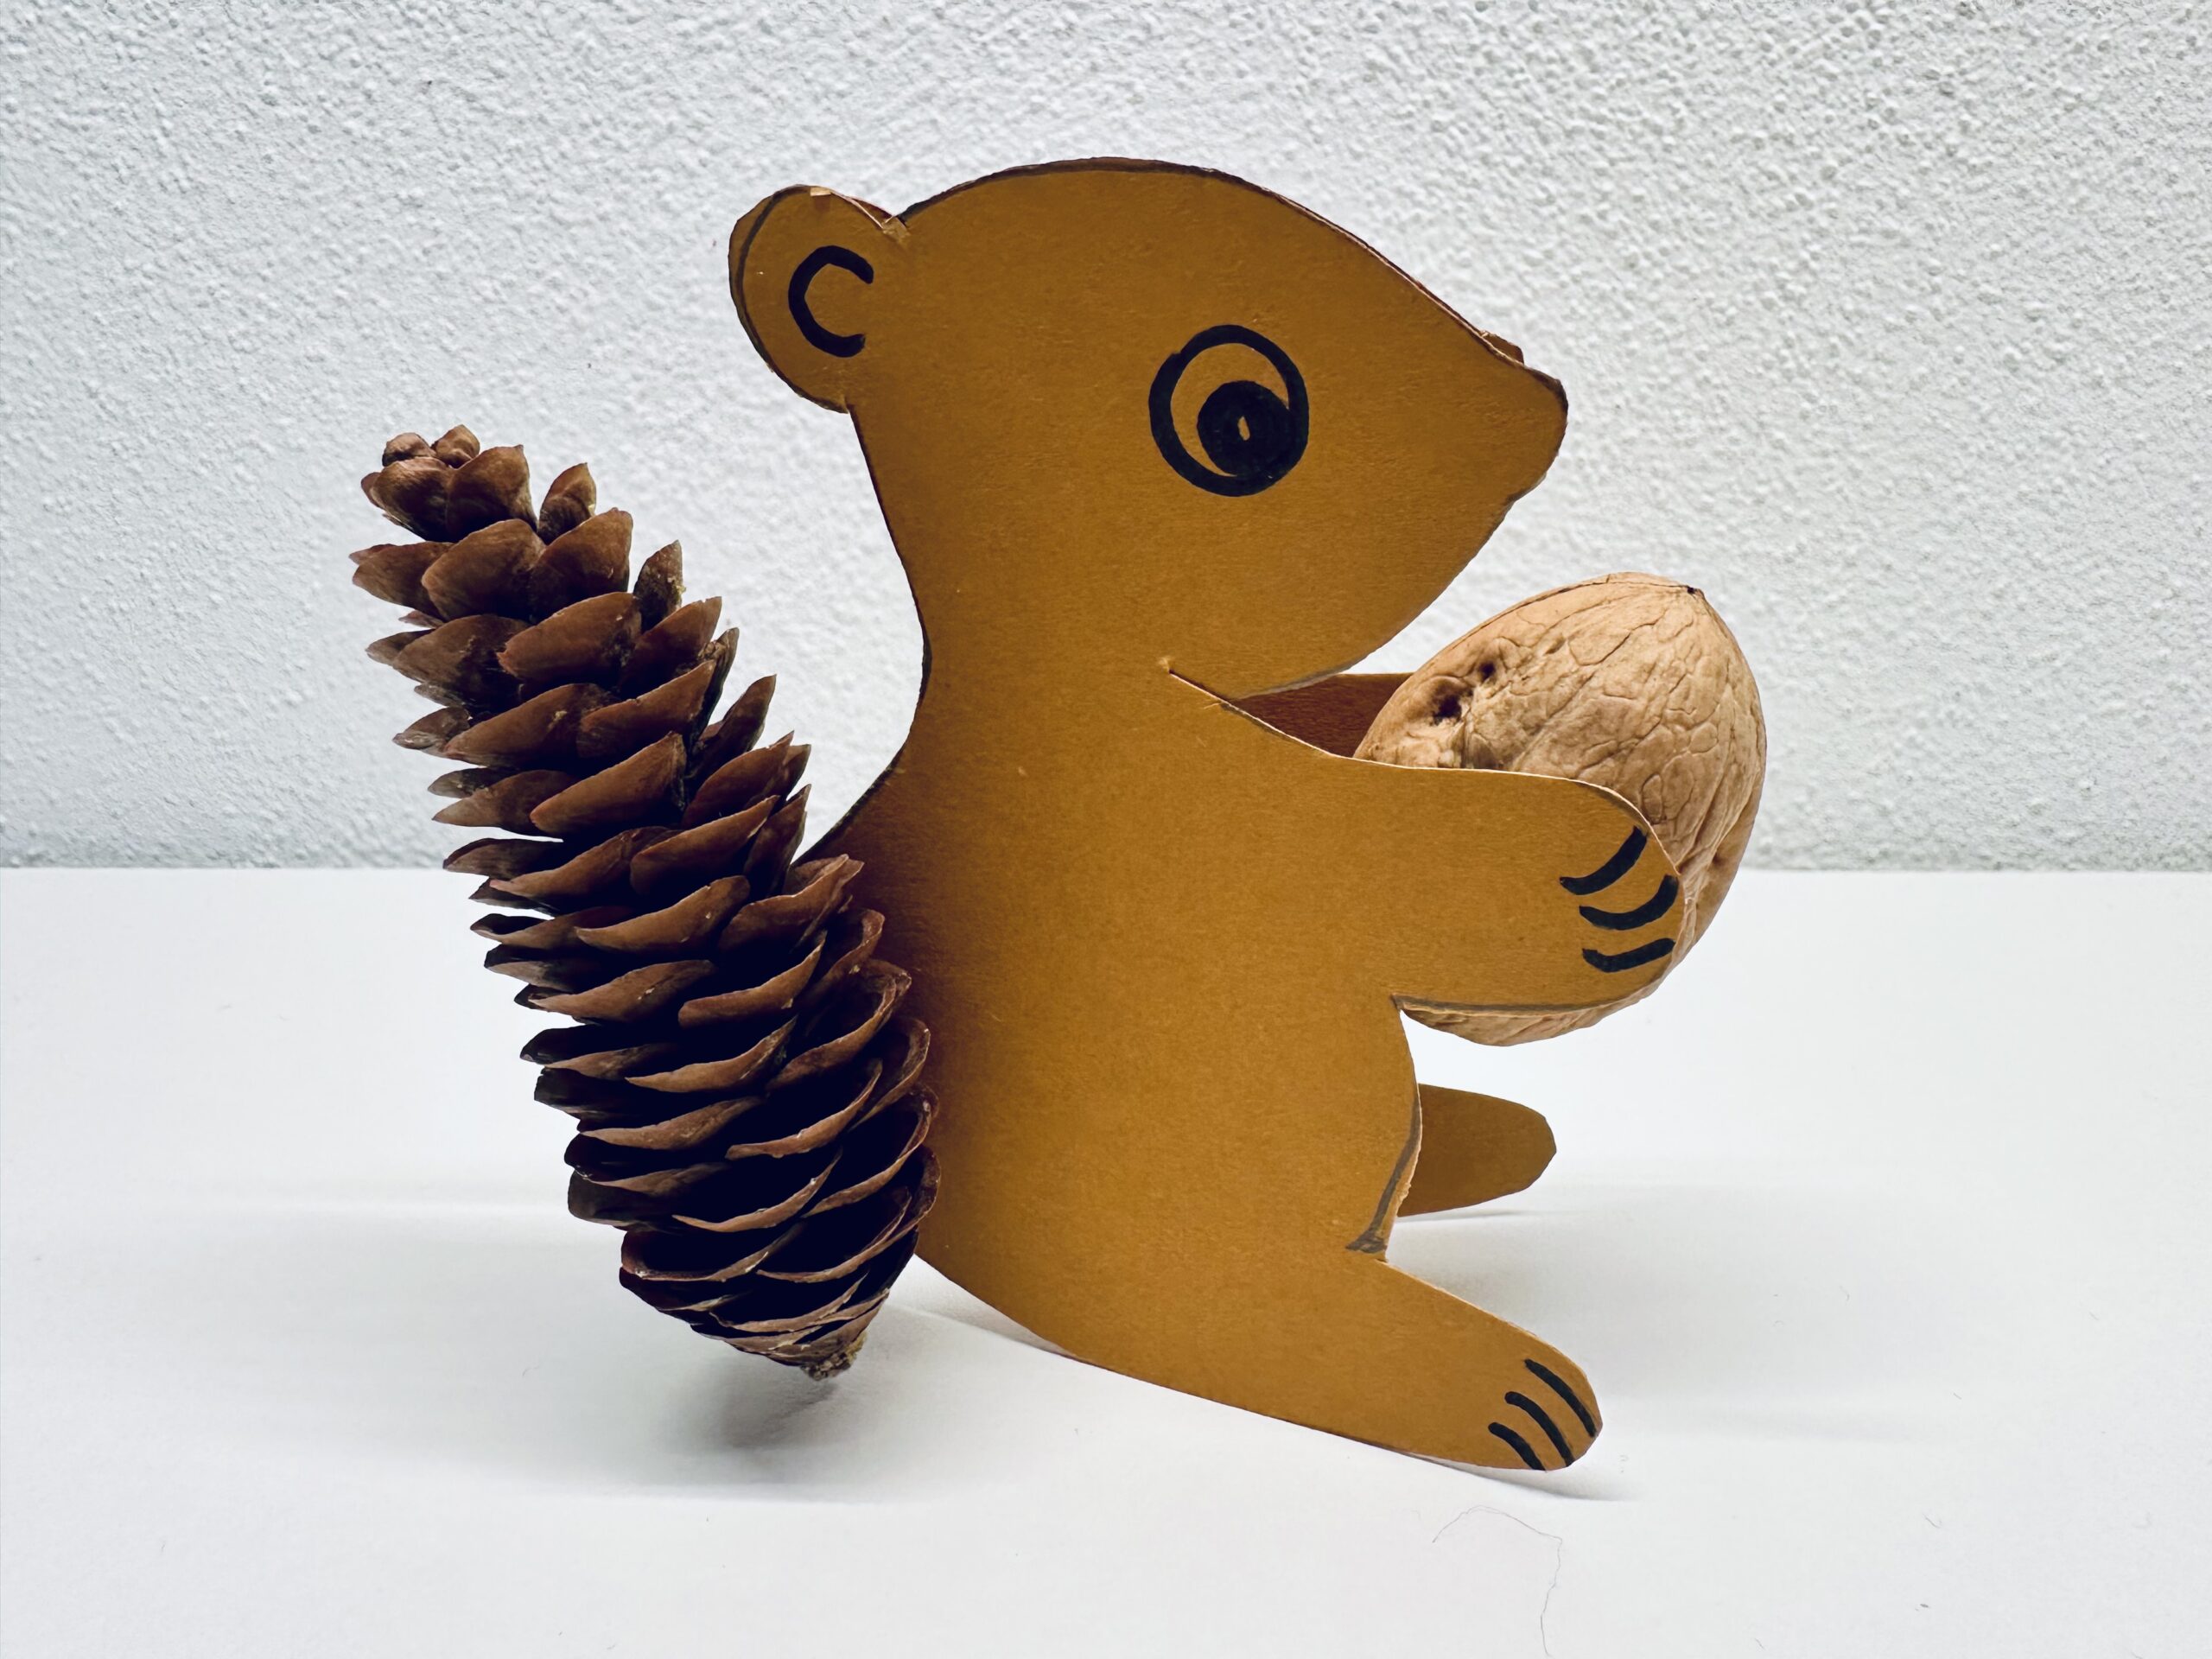 Bild zum Schritt 9 für das Bastel- und DIY-Abenteuer für Kinder: 'Ist der Kleber fest, könnt ihr das Eichhörnchen hinstellen.'